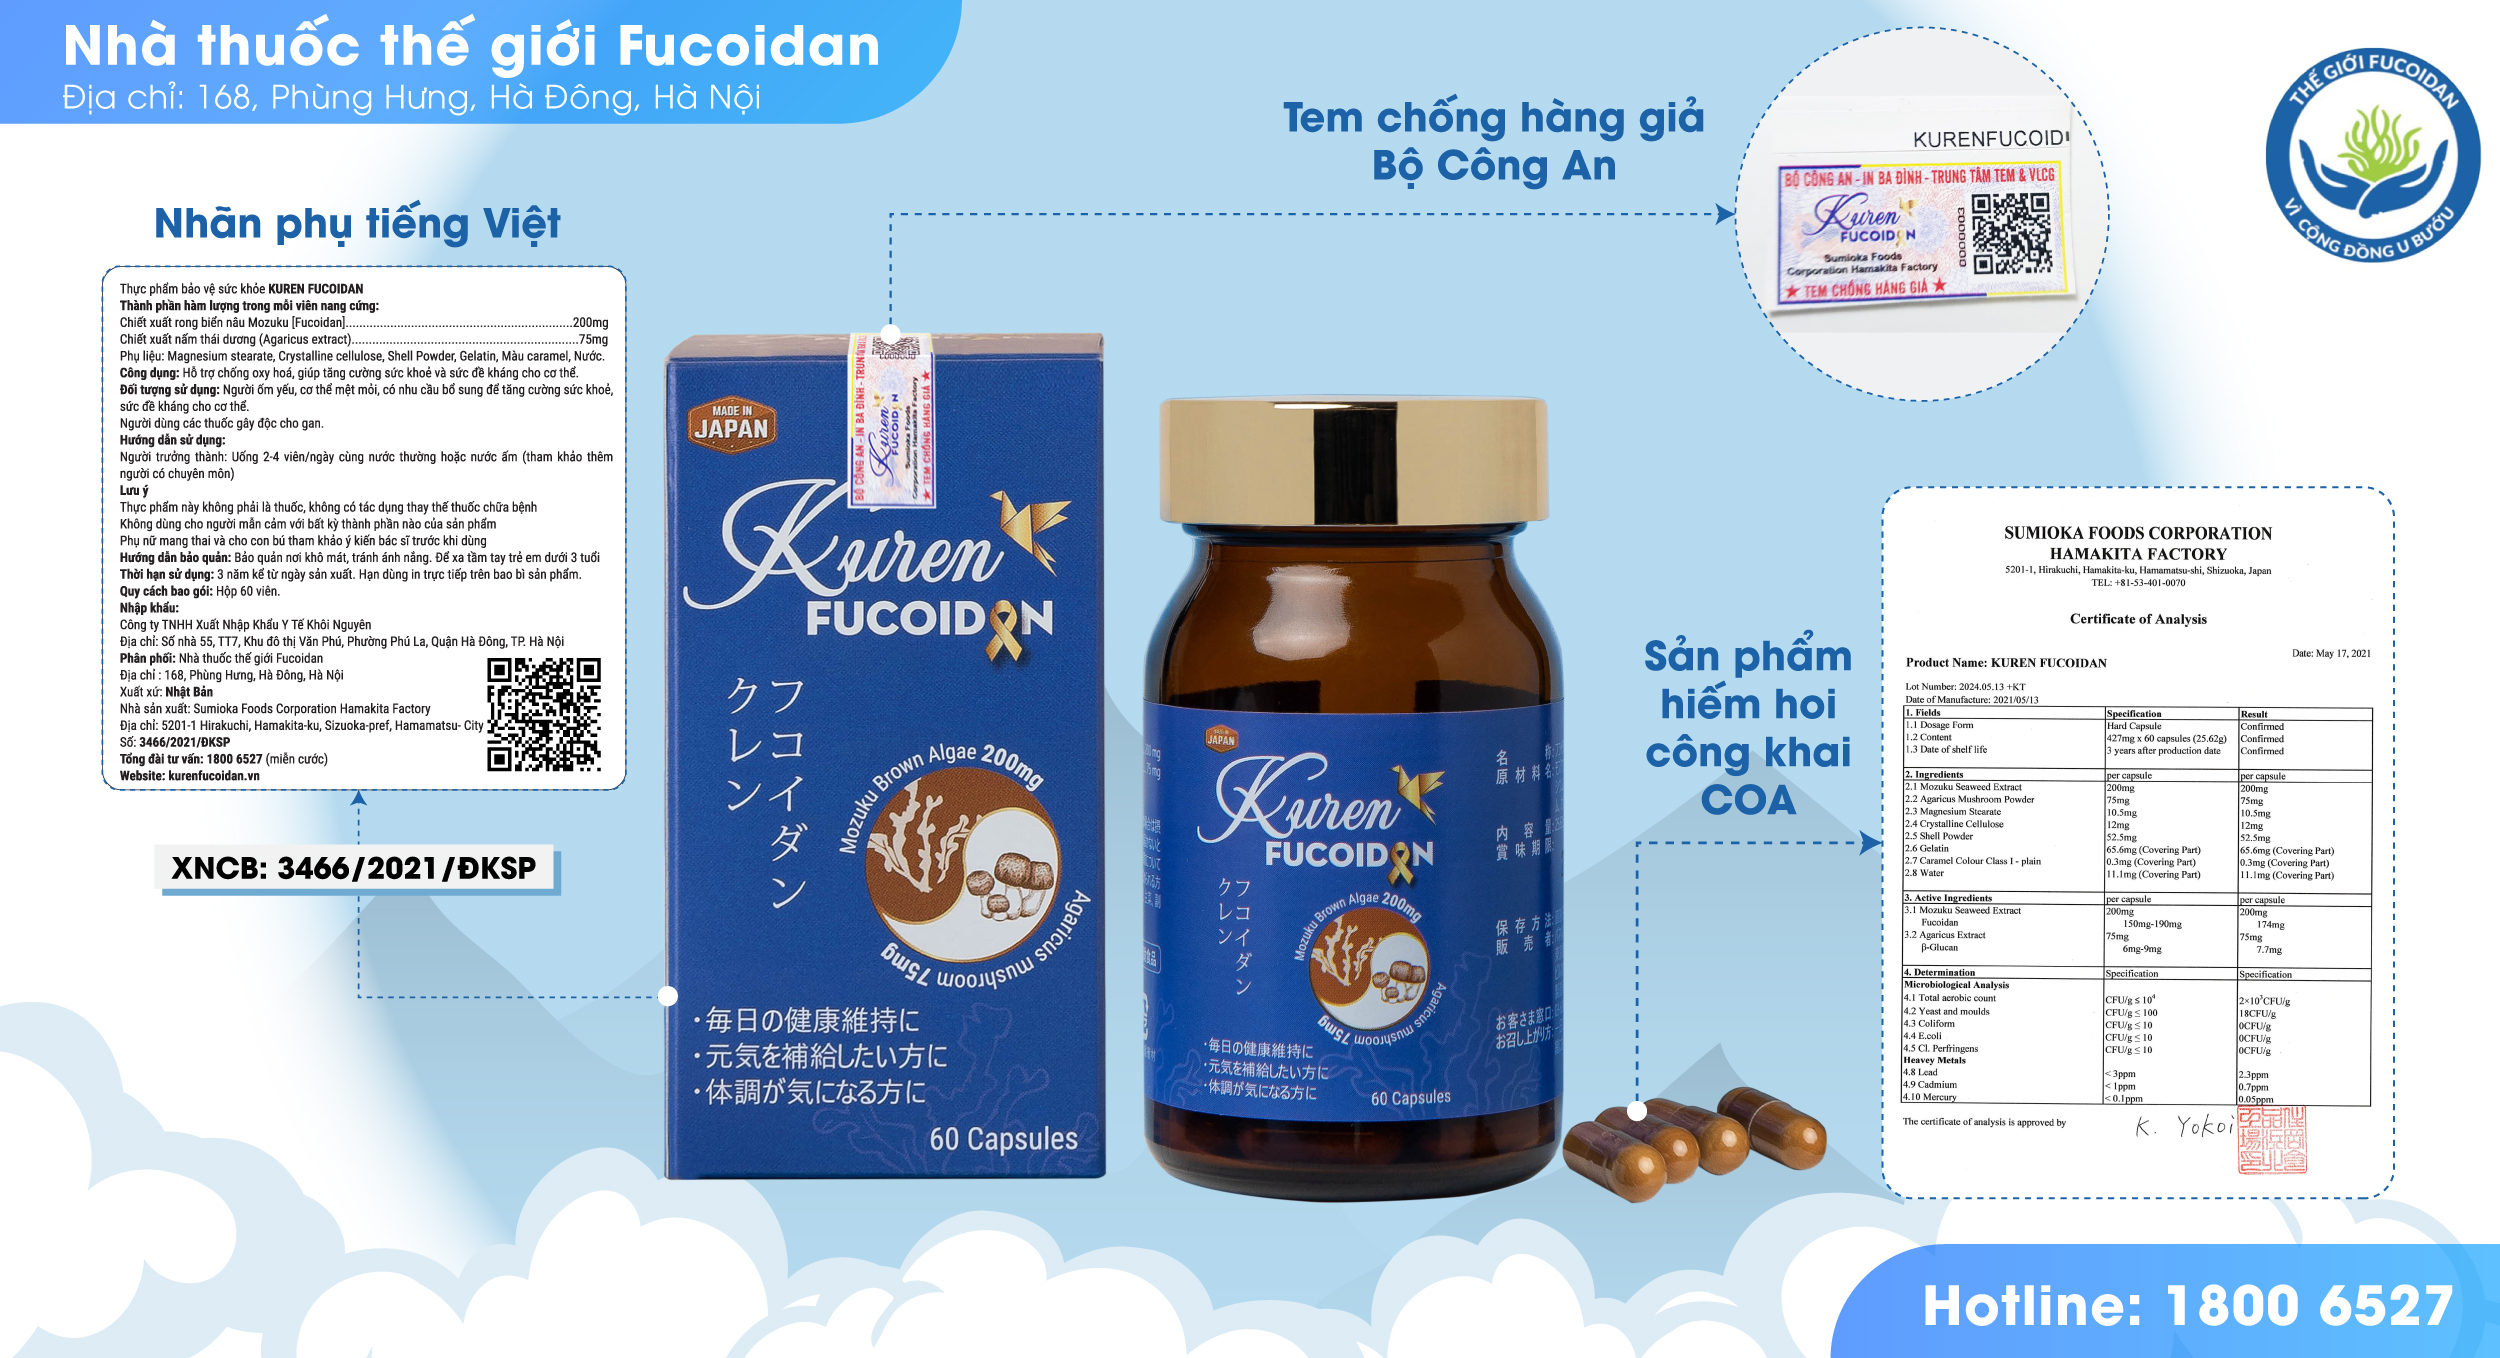 Viên uống Kuren Fucoidan Hộp 60 viên - Tăng cường miễn dịch, hỗ trợ điều trị u bướu